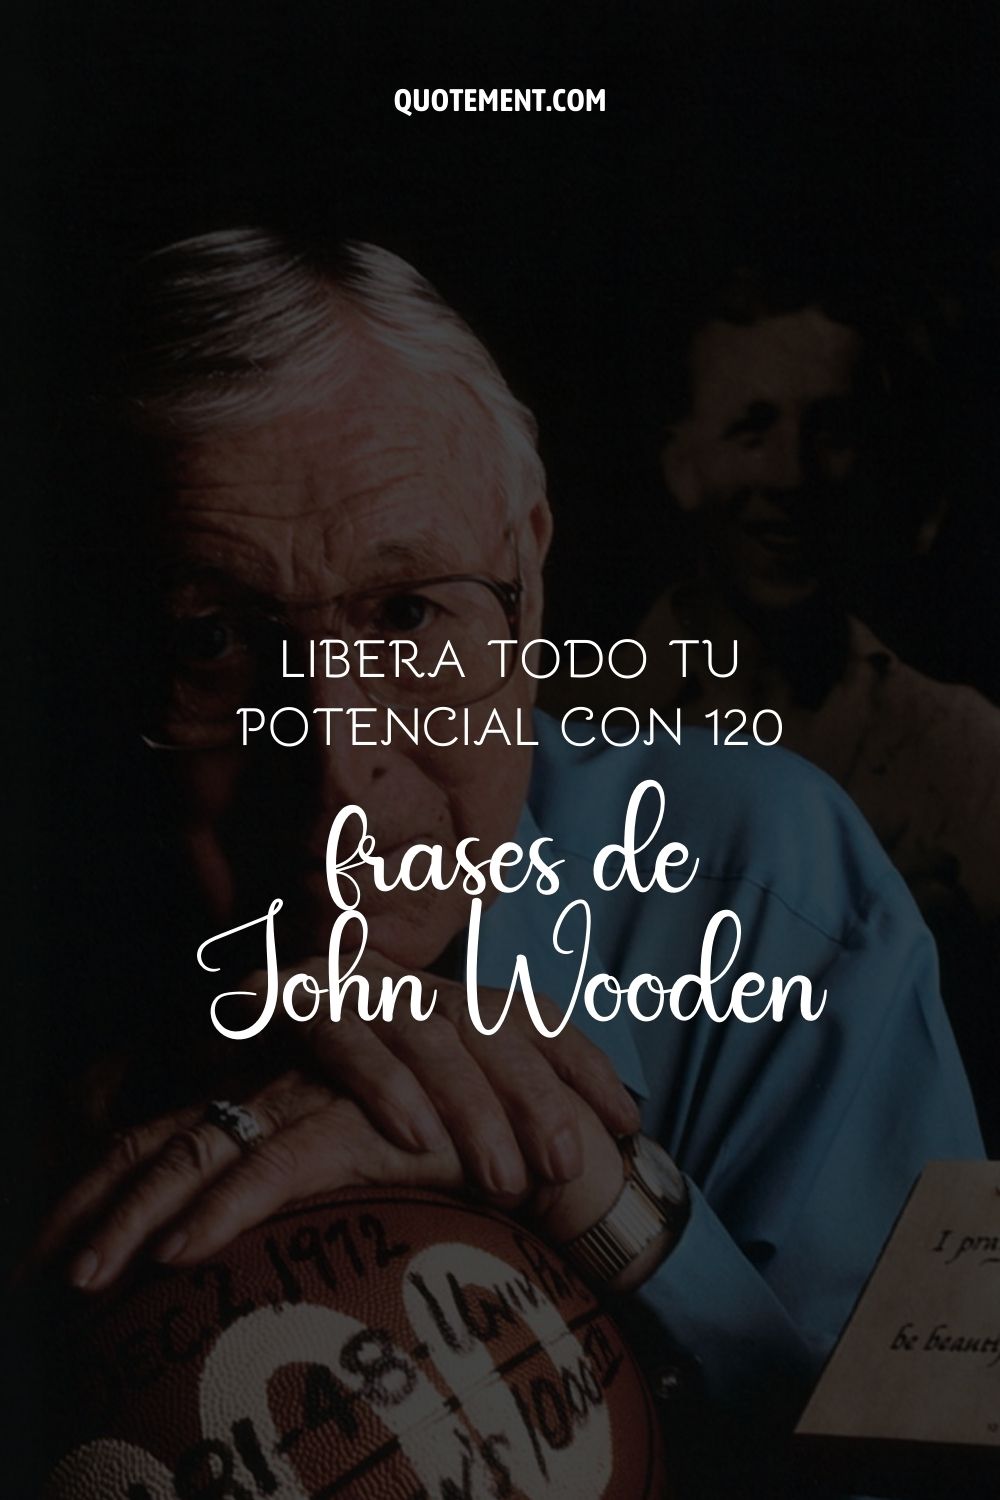 Libera todo tu potencial con 120 frases de John Wooden 